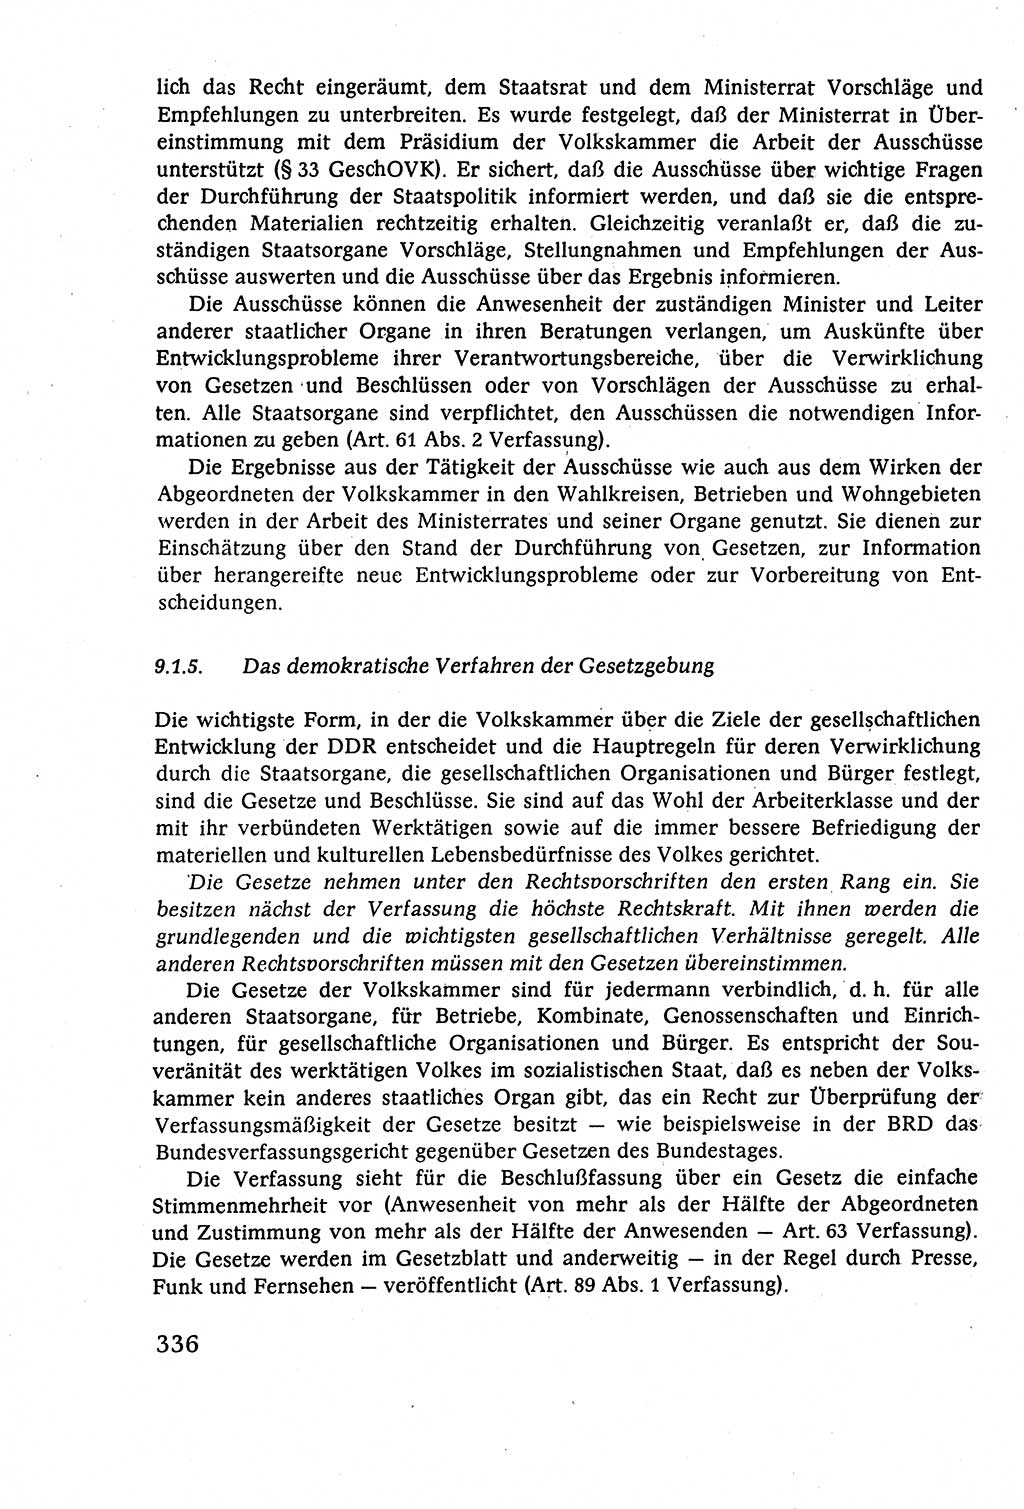 Staatsrecht der DDR (Deutsche Demokratische Republik), Lehrbuch 1977, Seite 336 (St.-R. DDR Lb. 1977, S. 336)